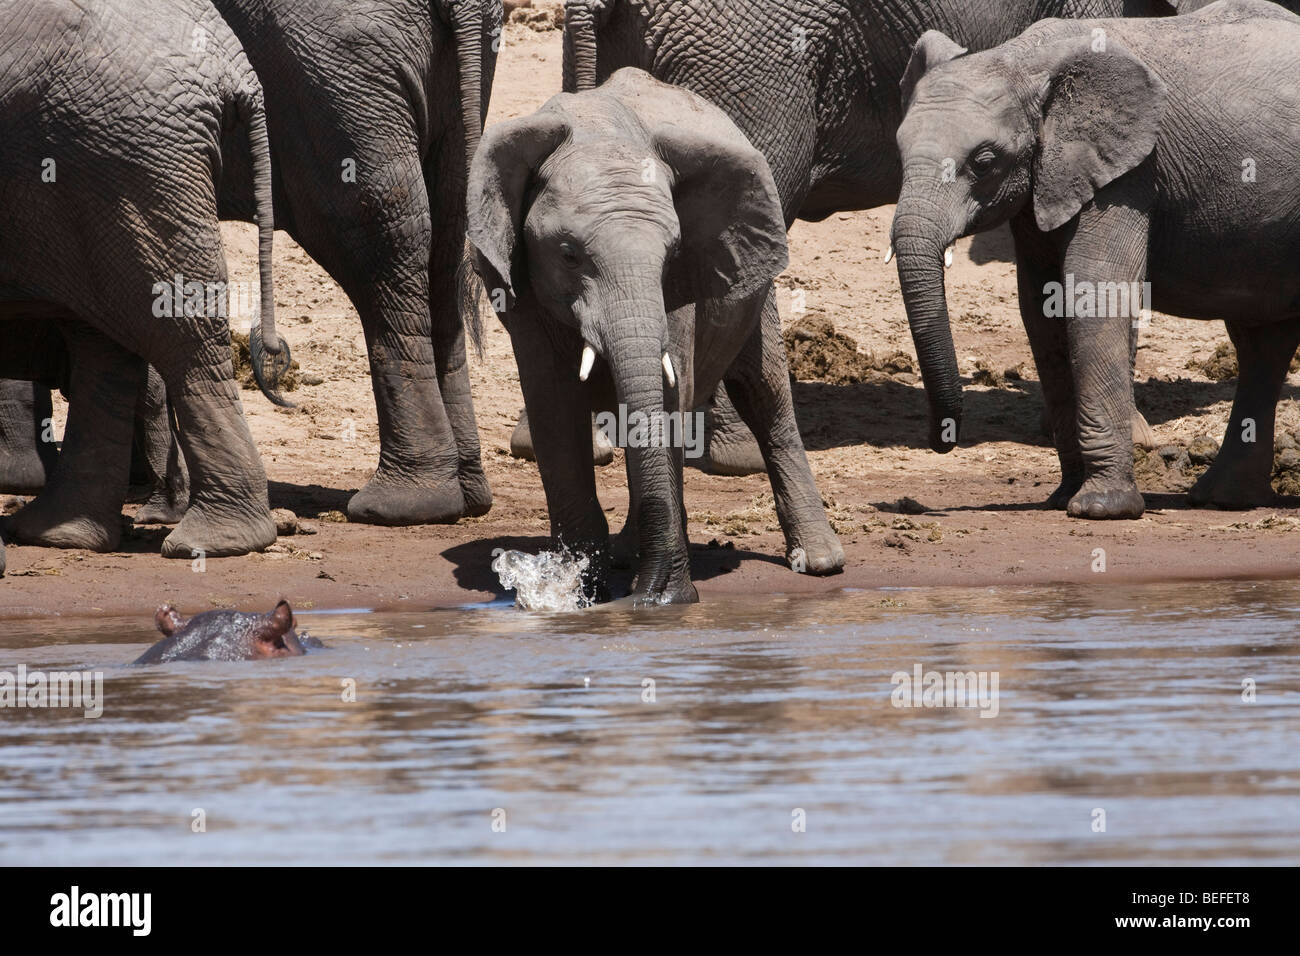 Cute Baby afrikanischen Elefanten, am Flussufer, flatternde Ohren, spielt  in den Fluss Spritzwasser mit Trunk von Hippo in Wasser in Masai Mara,  Kenia beobachtet Stockfotografie - Alamy